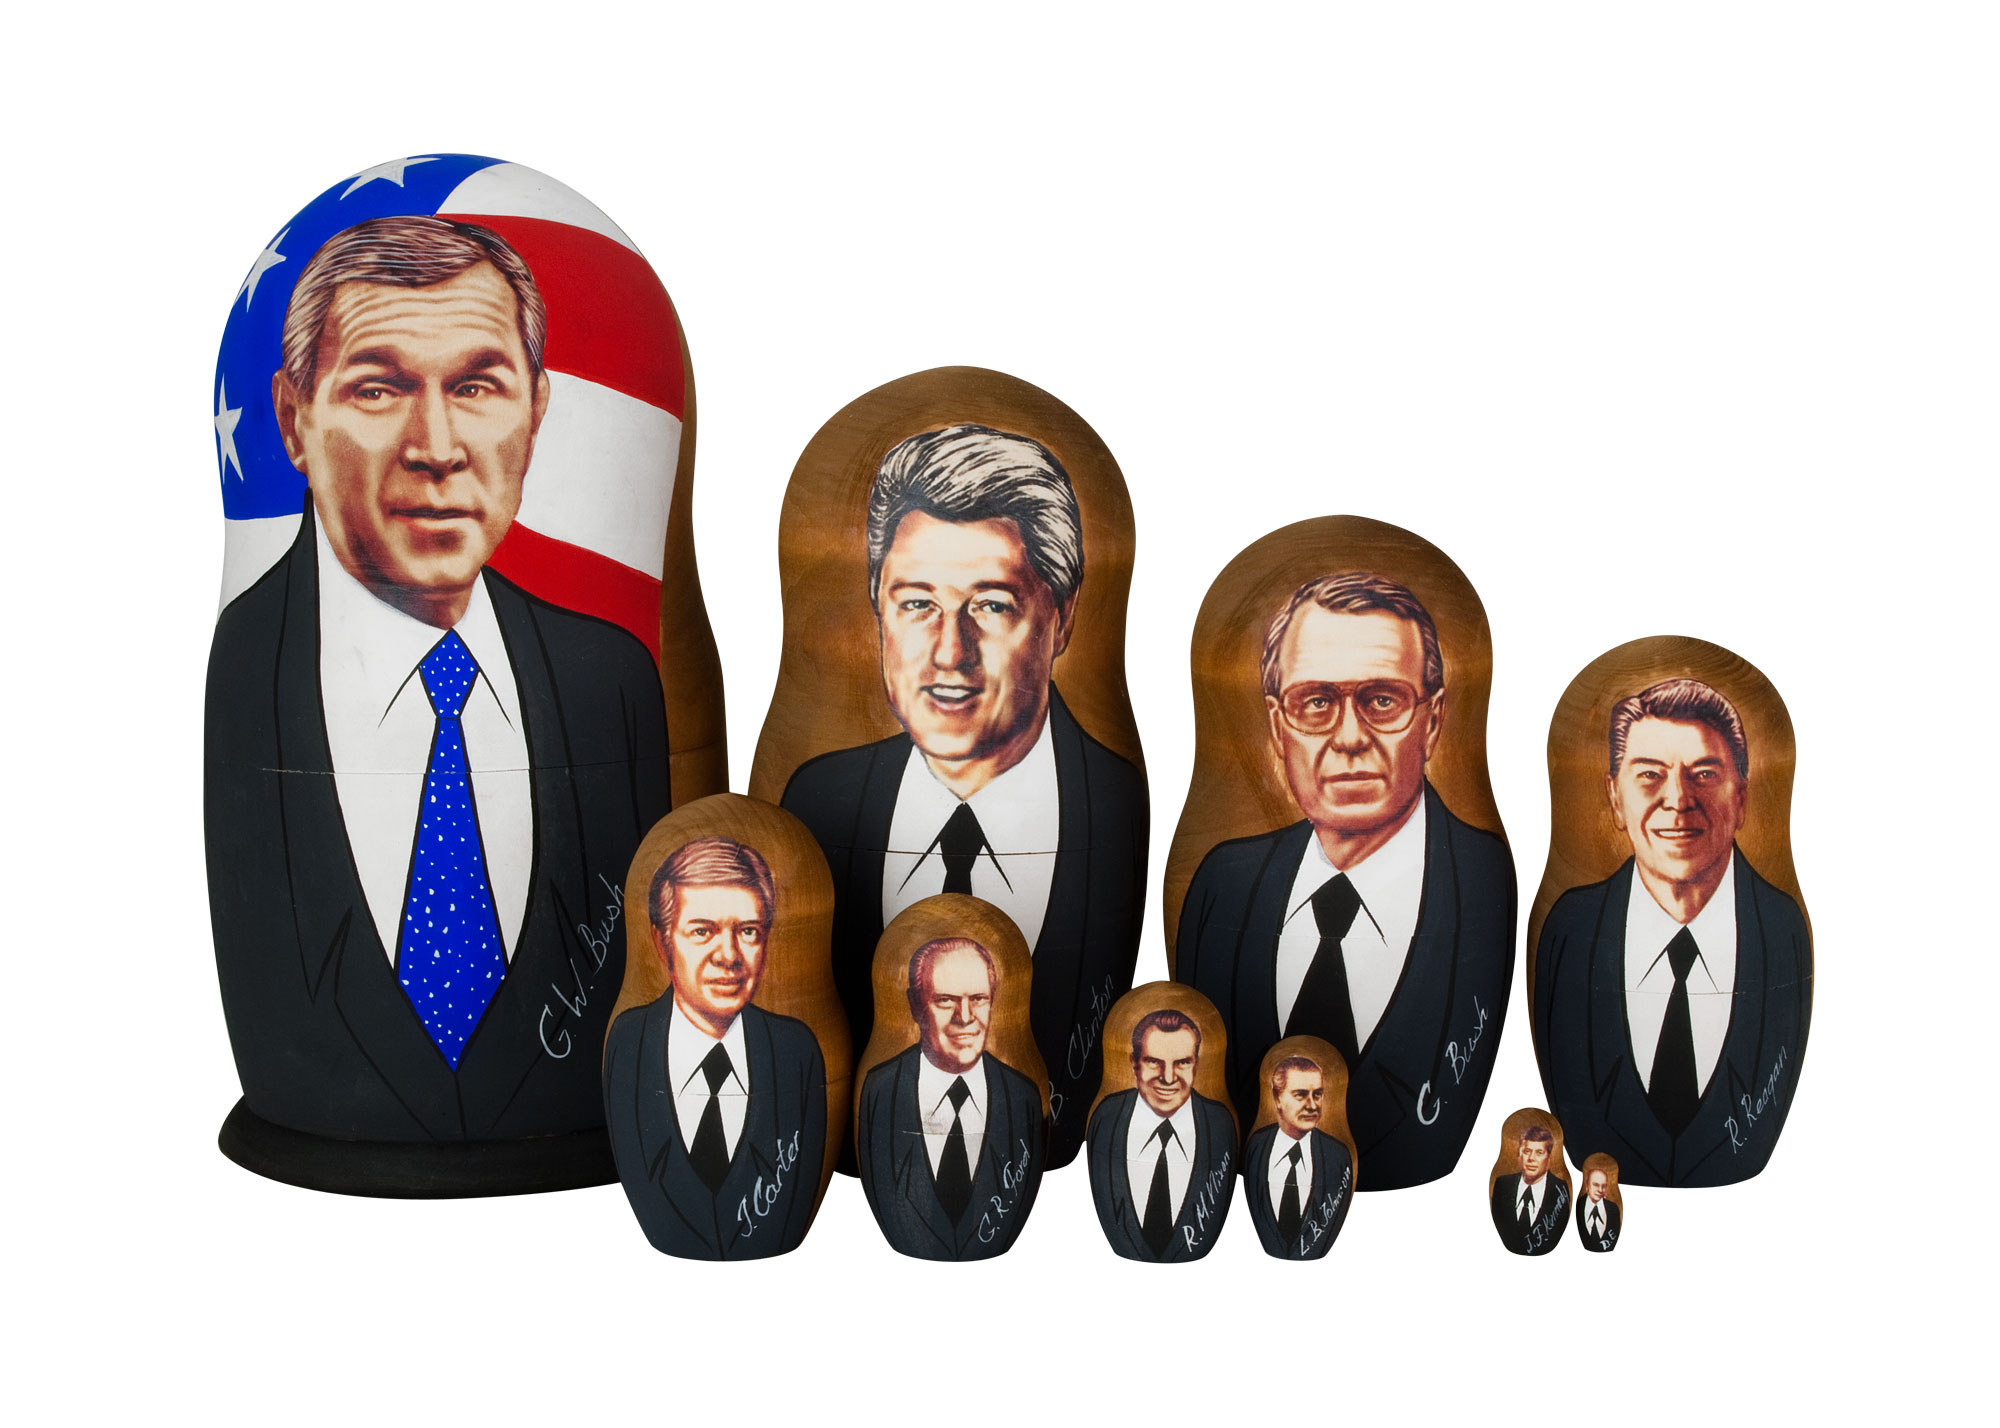 Buy Матрешка «Буш и другие президенты США» 5 мест 15 см at GoldenCockerel.com